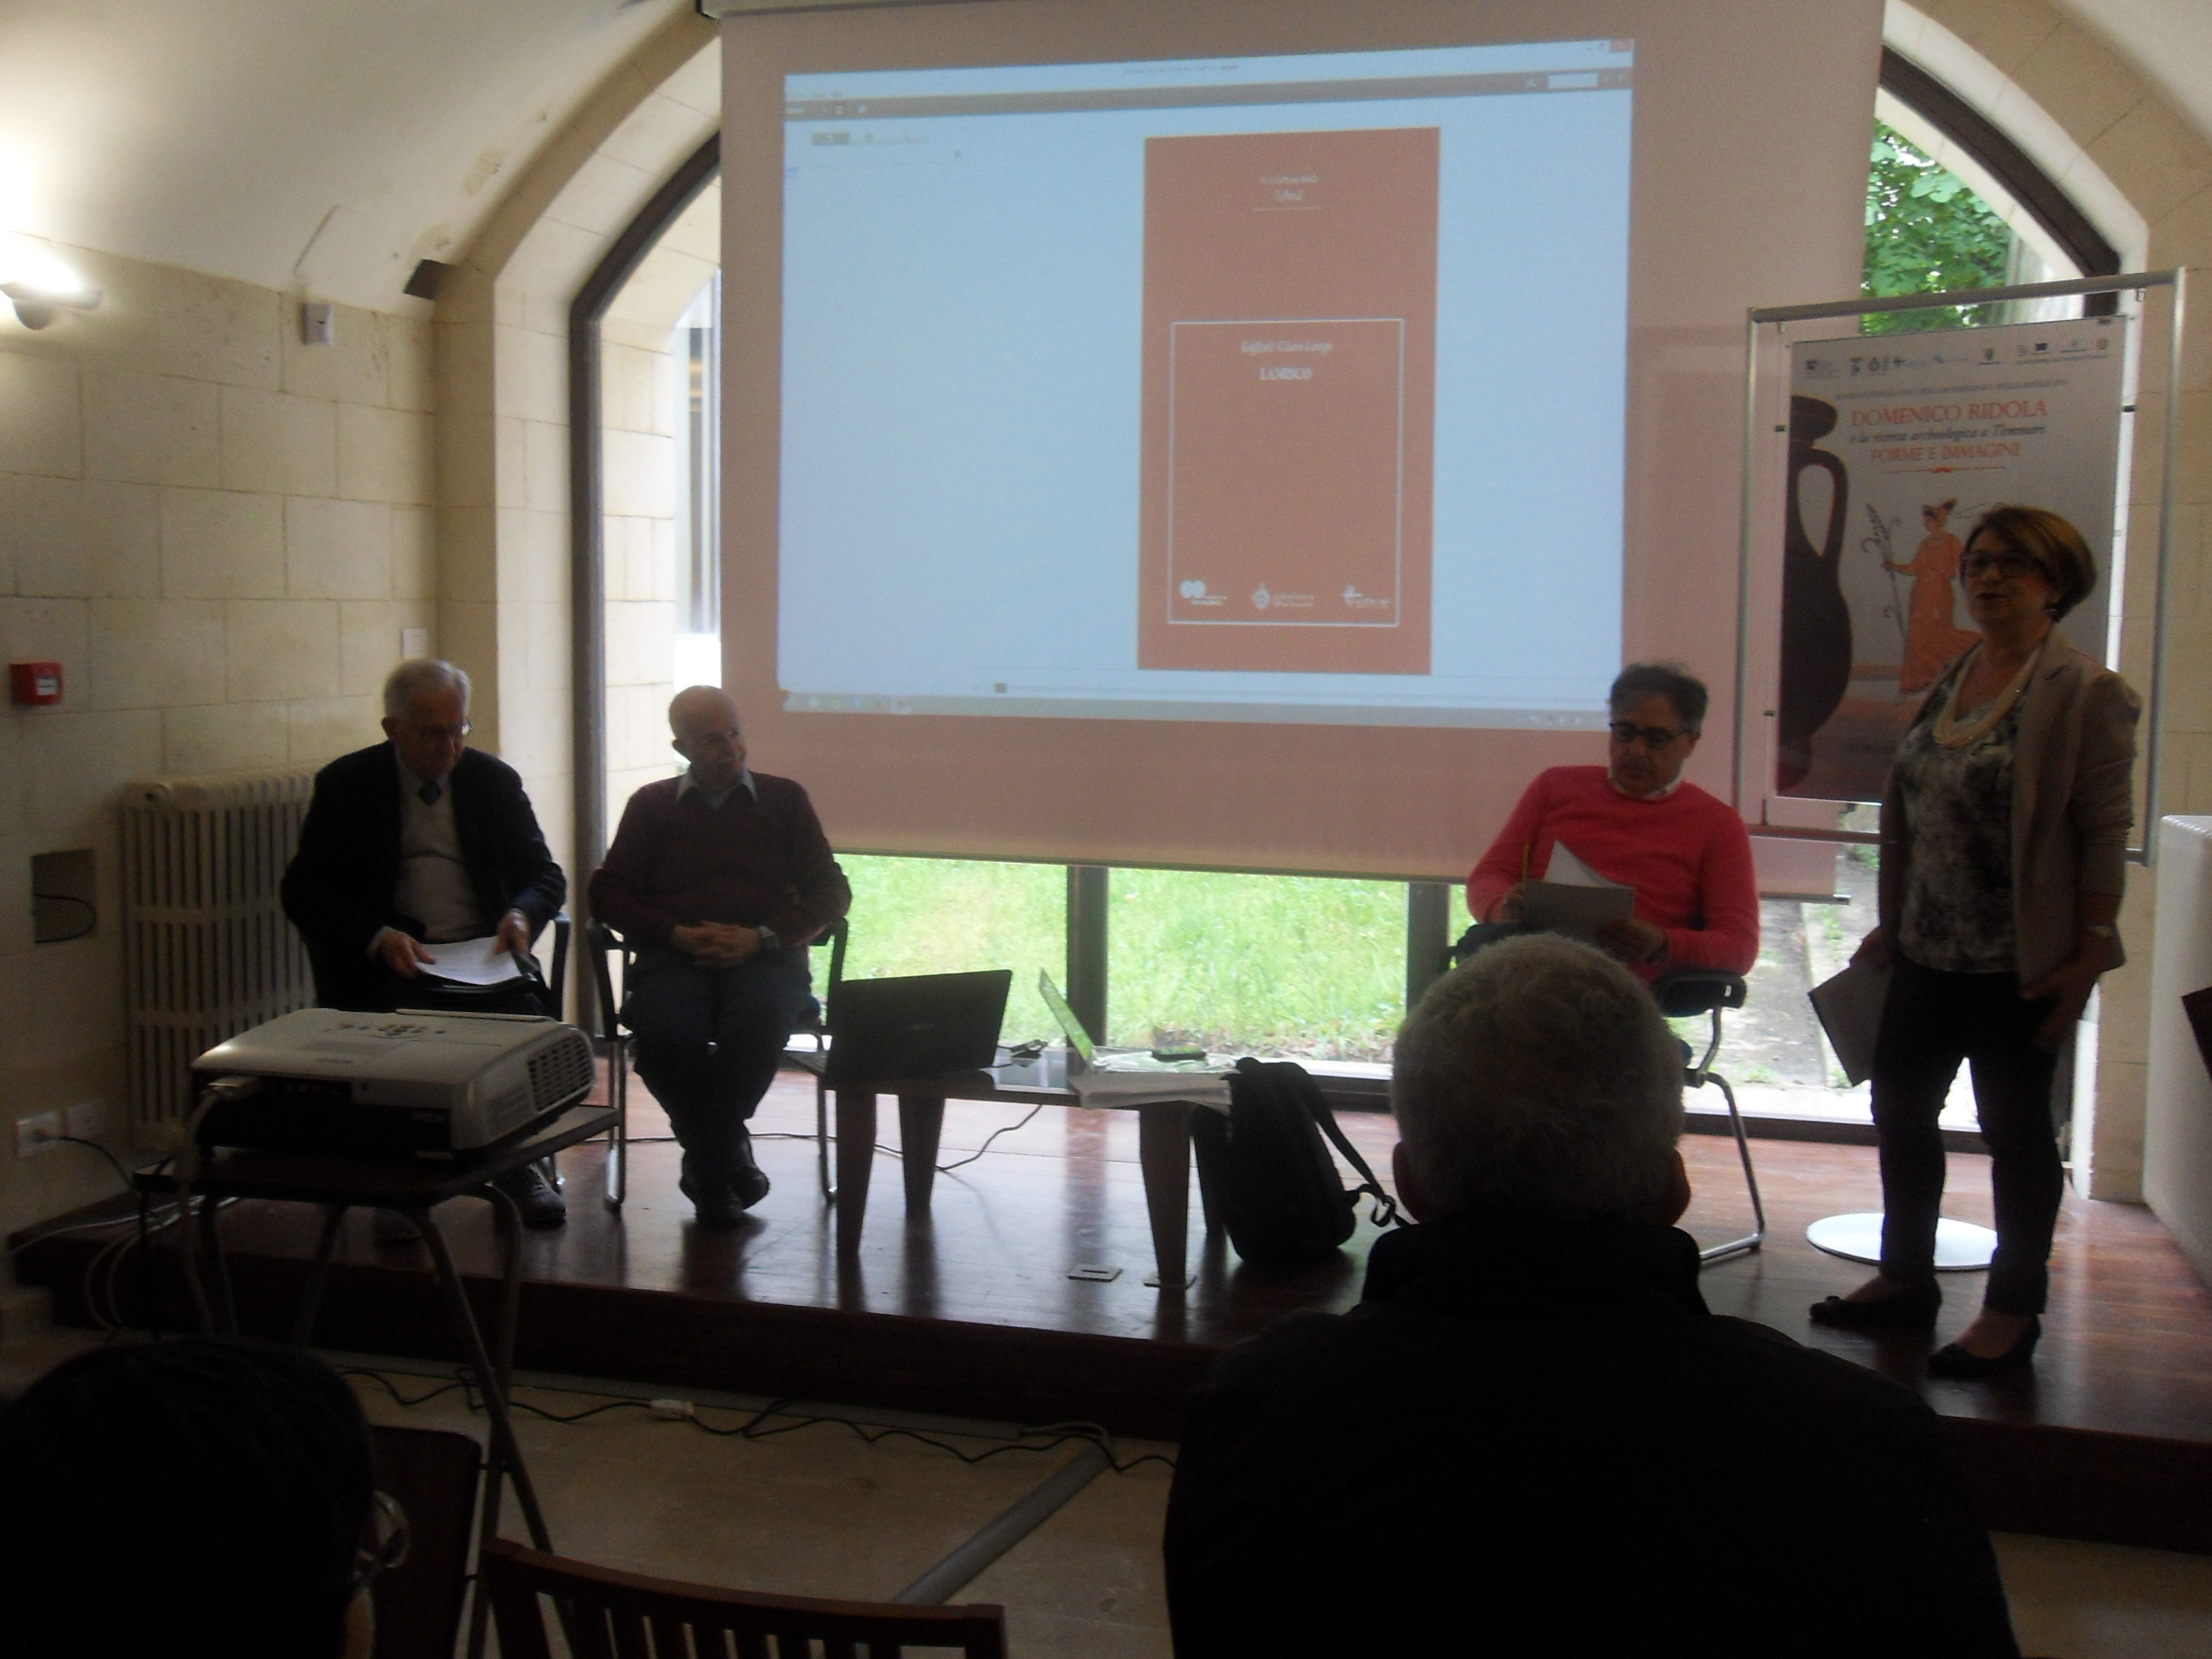 La conferenza stampa di presentazione del libro digitale “LAMISCO” del Professor Raffaele Giura Longo